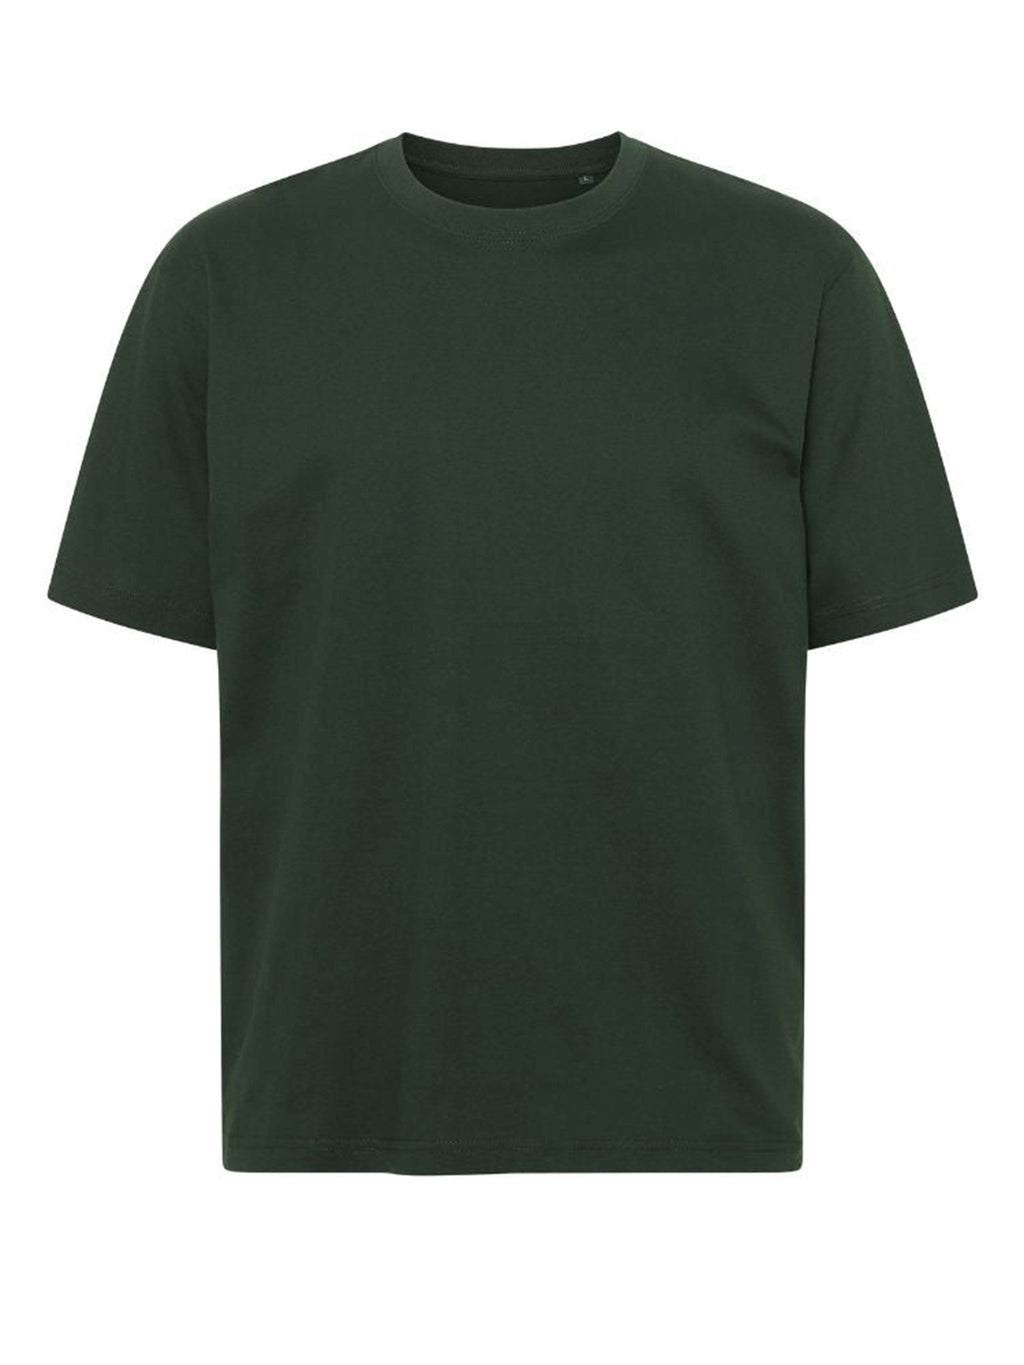 Negabaritiniai marškinėliai - tamsiai žalia